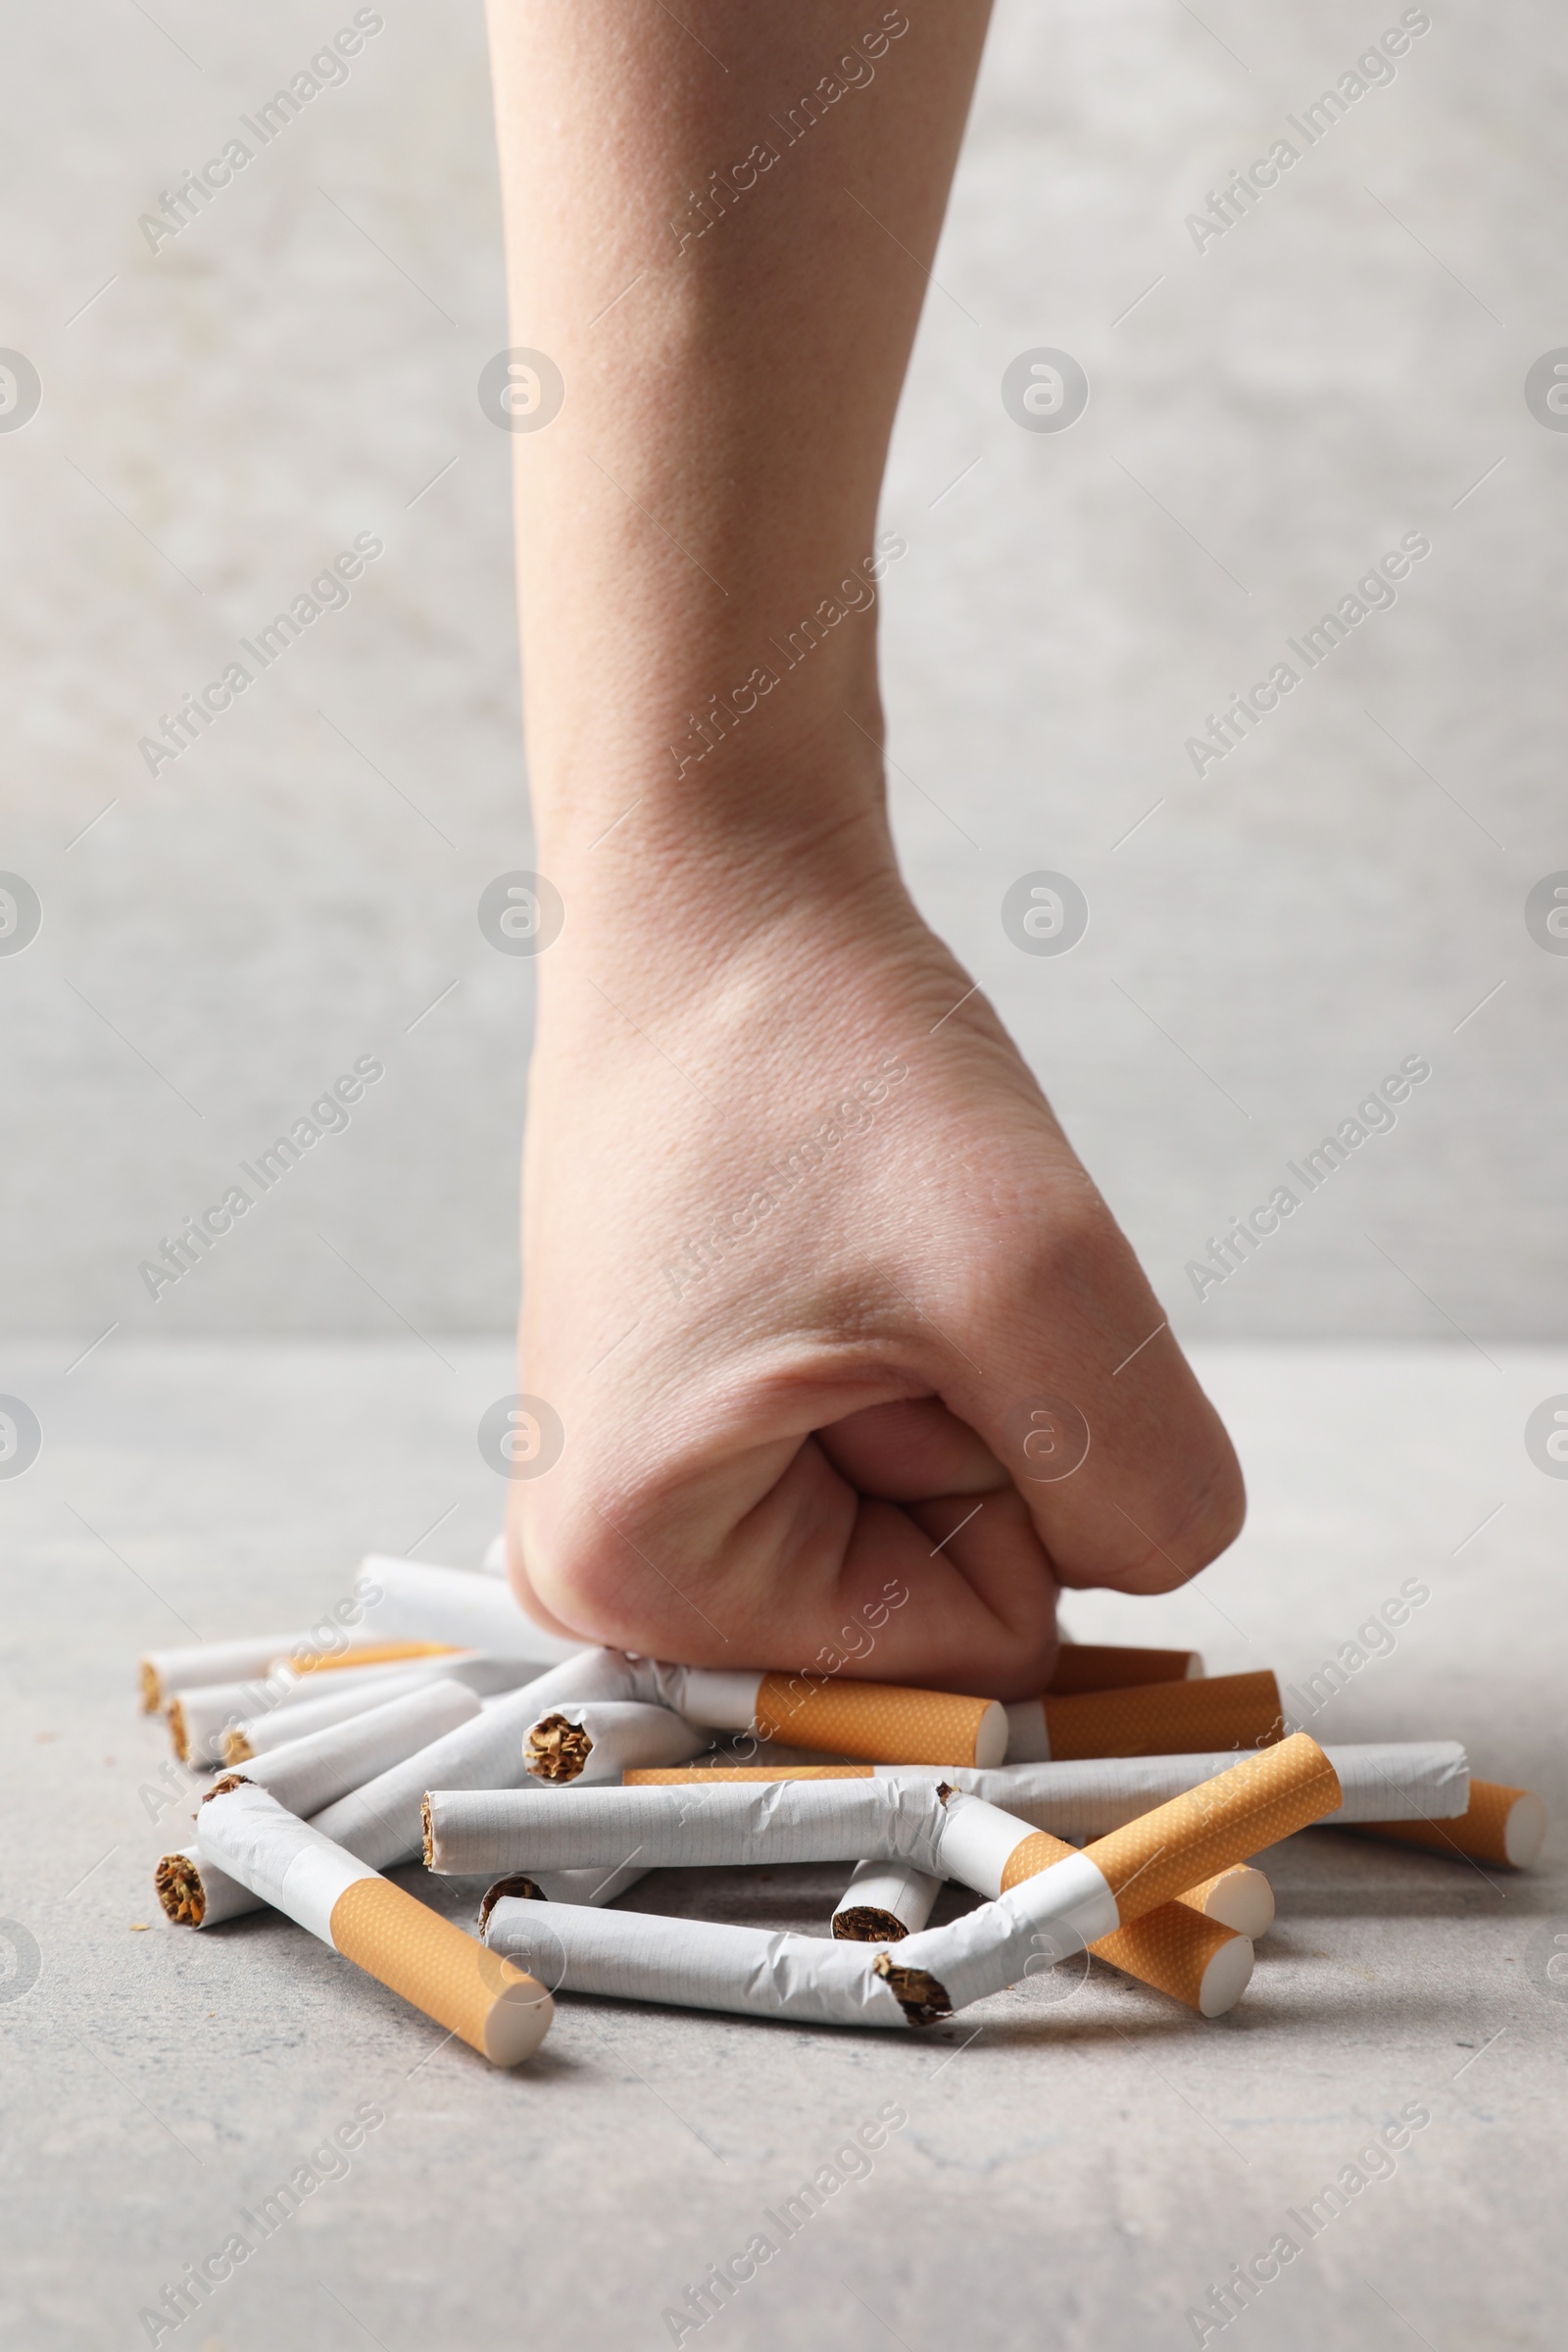 Photo of Stop smoking. Woman crushing cigarettes at grey table, closeup